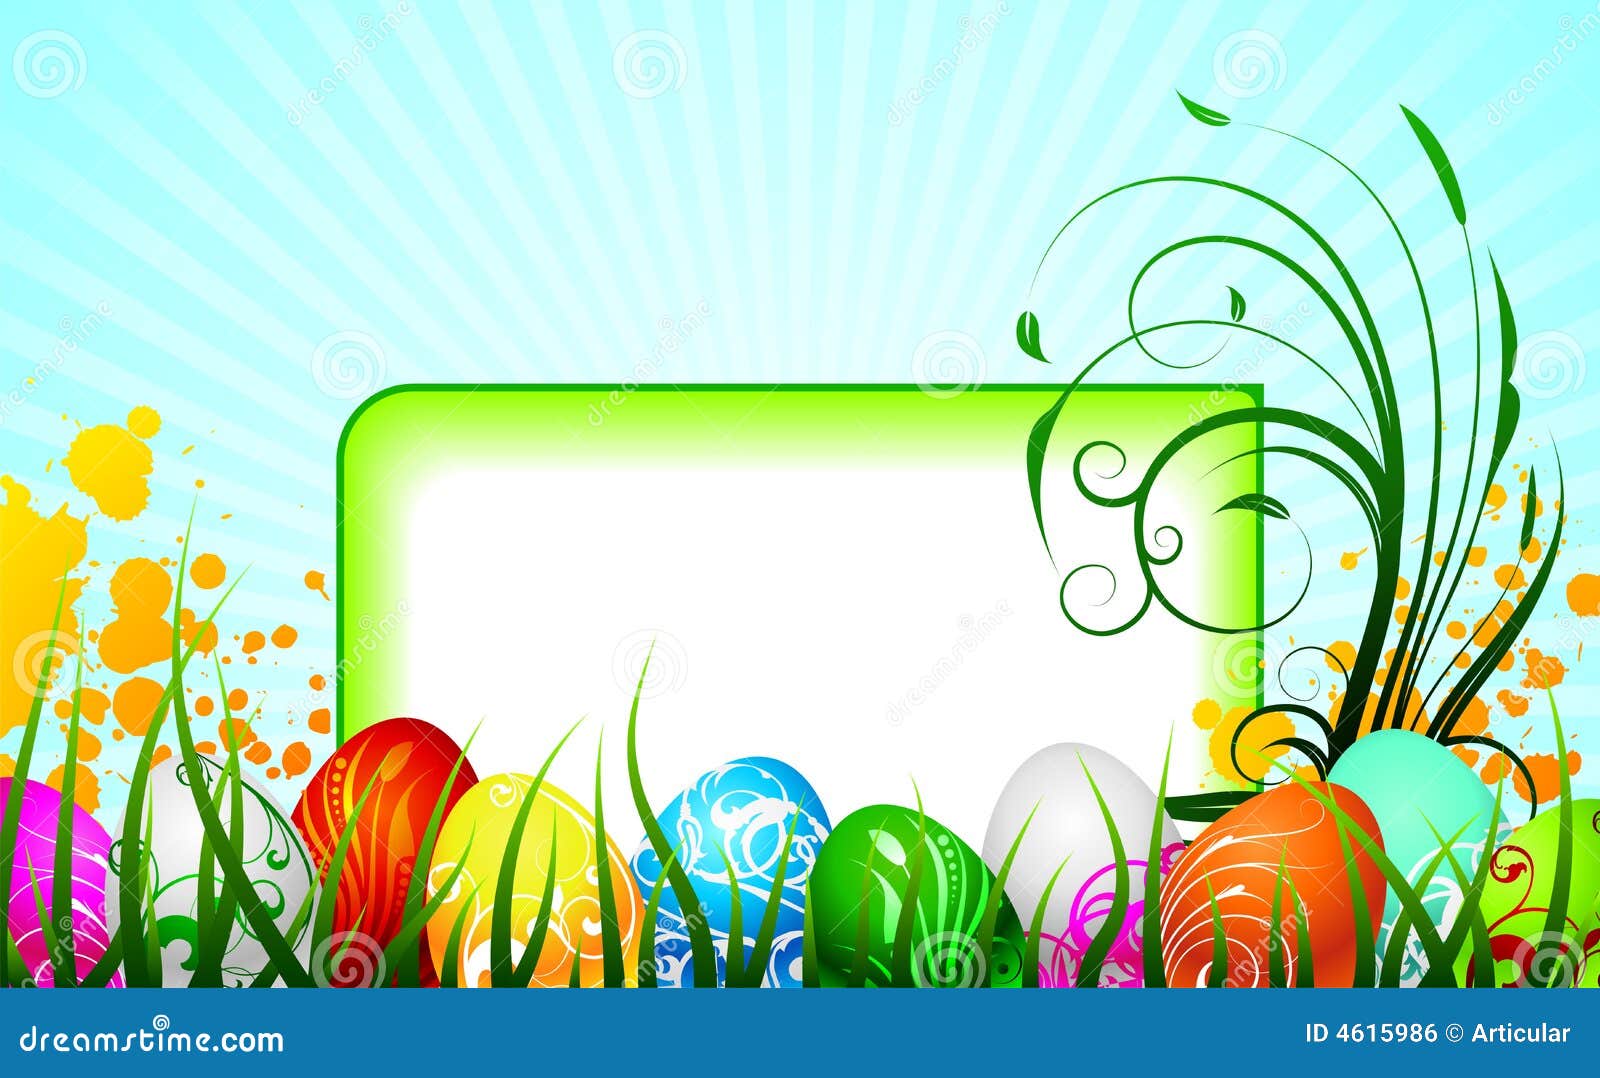 De groetkaart van Pasen met geschilderde eieren op de lenteachtergrond